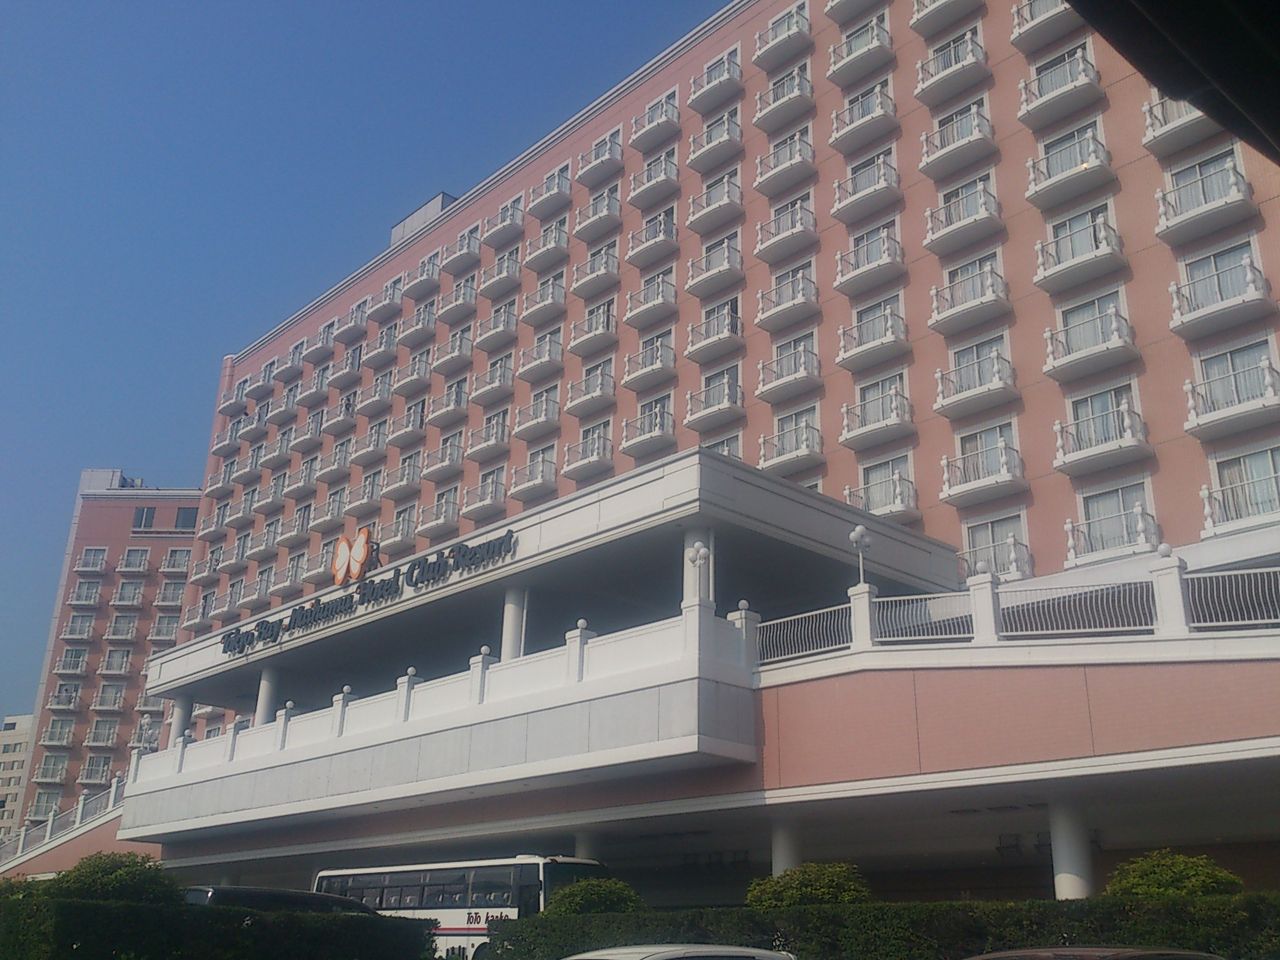 東京ベイ舞浜ホテルクラブリゾートの駐車場 東京ベイ舞浜ホテルクラブリゾートに泊まってディズニー行ってみた